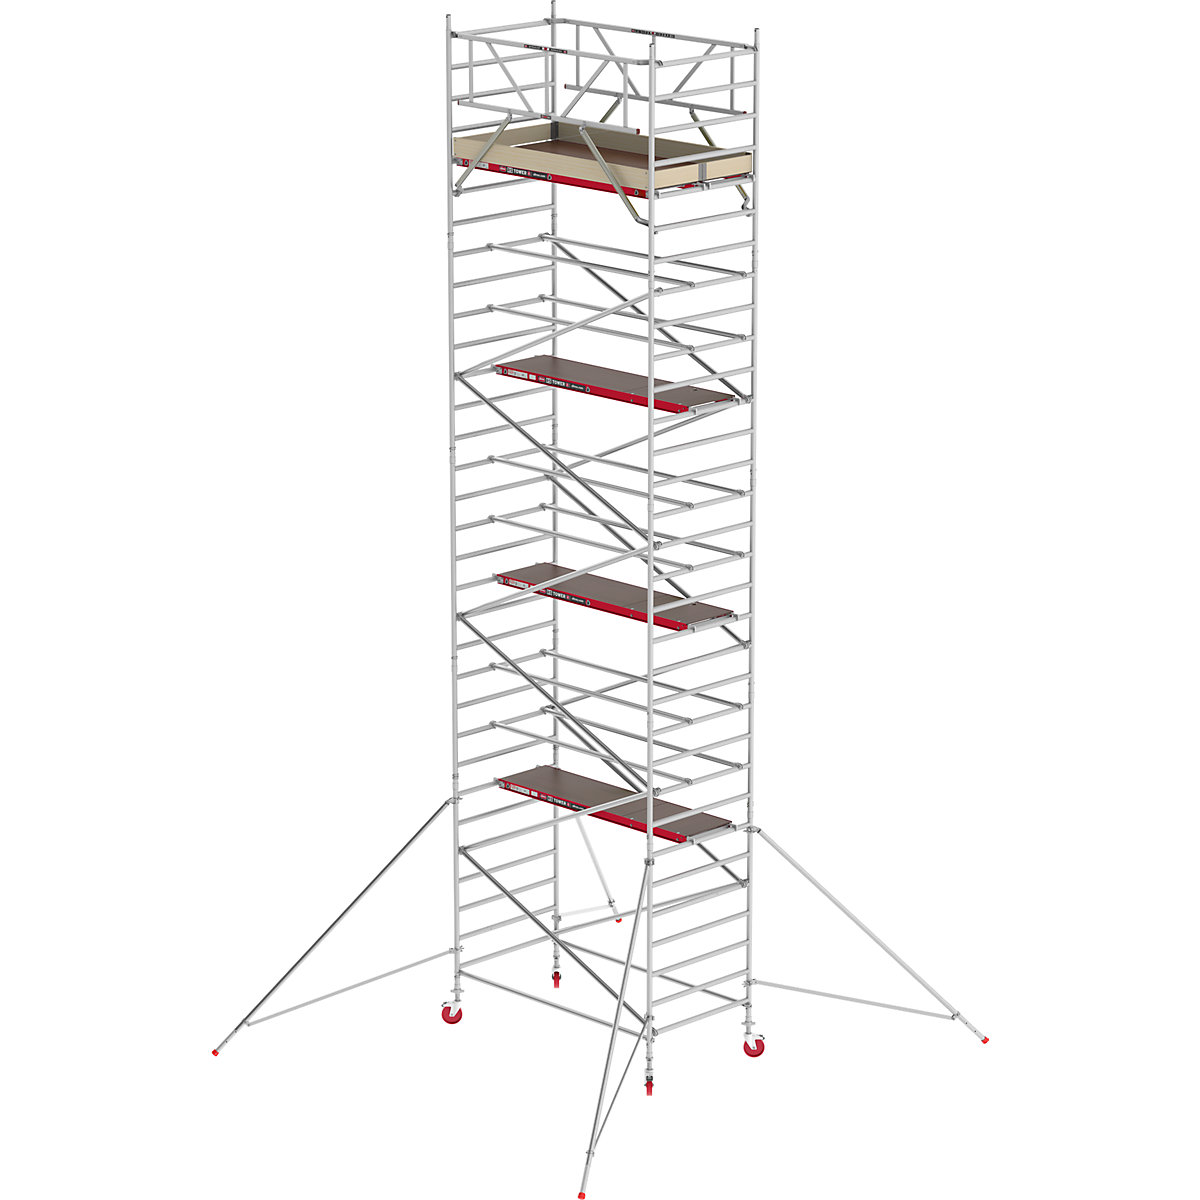 Altrex Fahrgerüst RS TOWER 42 breit, Holzplattform, Länge 1,85 m, Arbeitshöhe 10,20 m